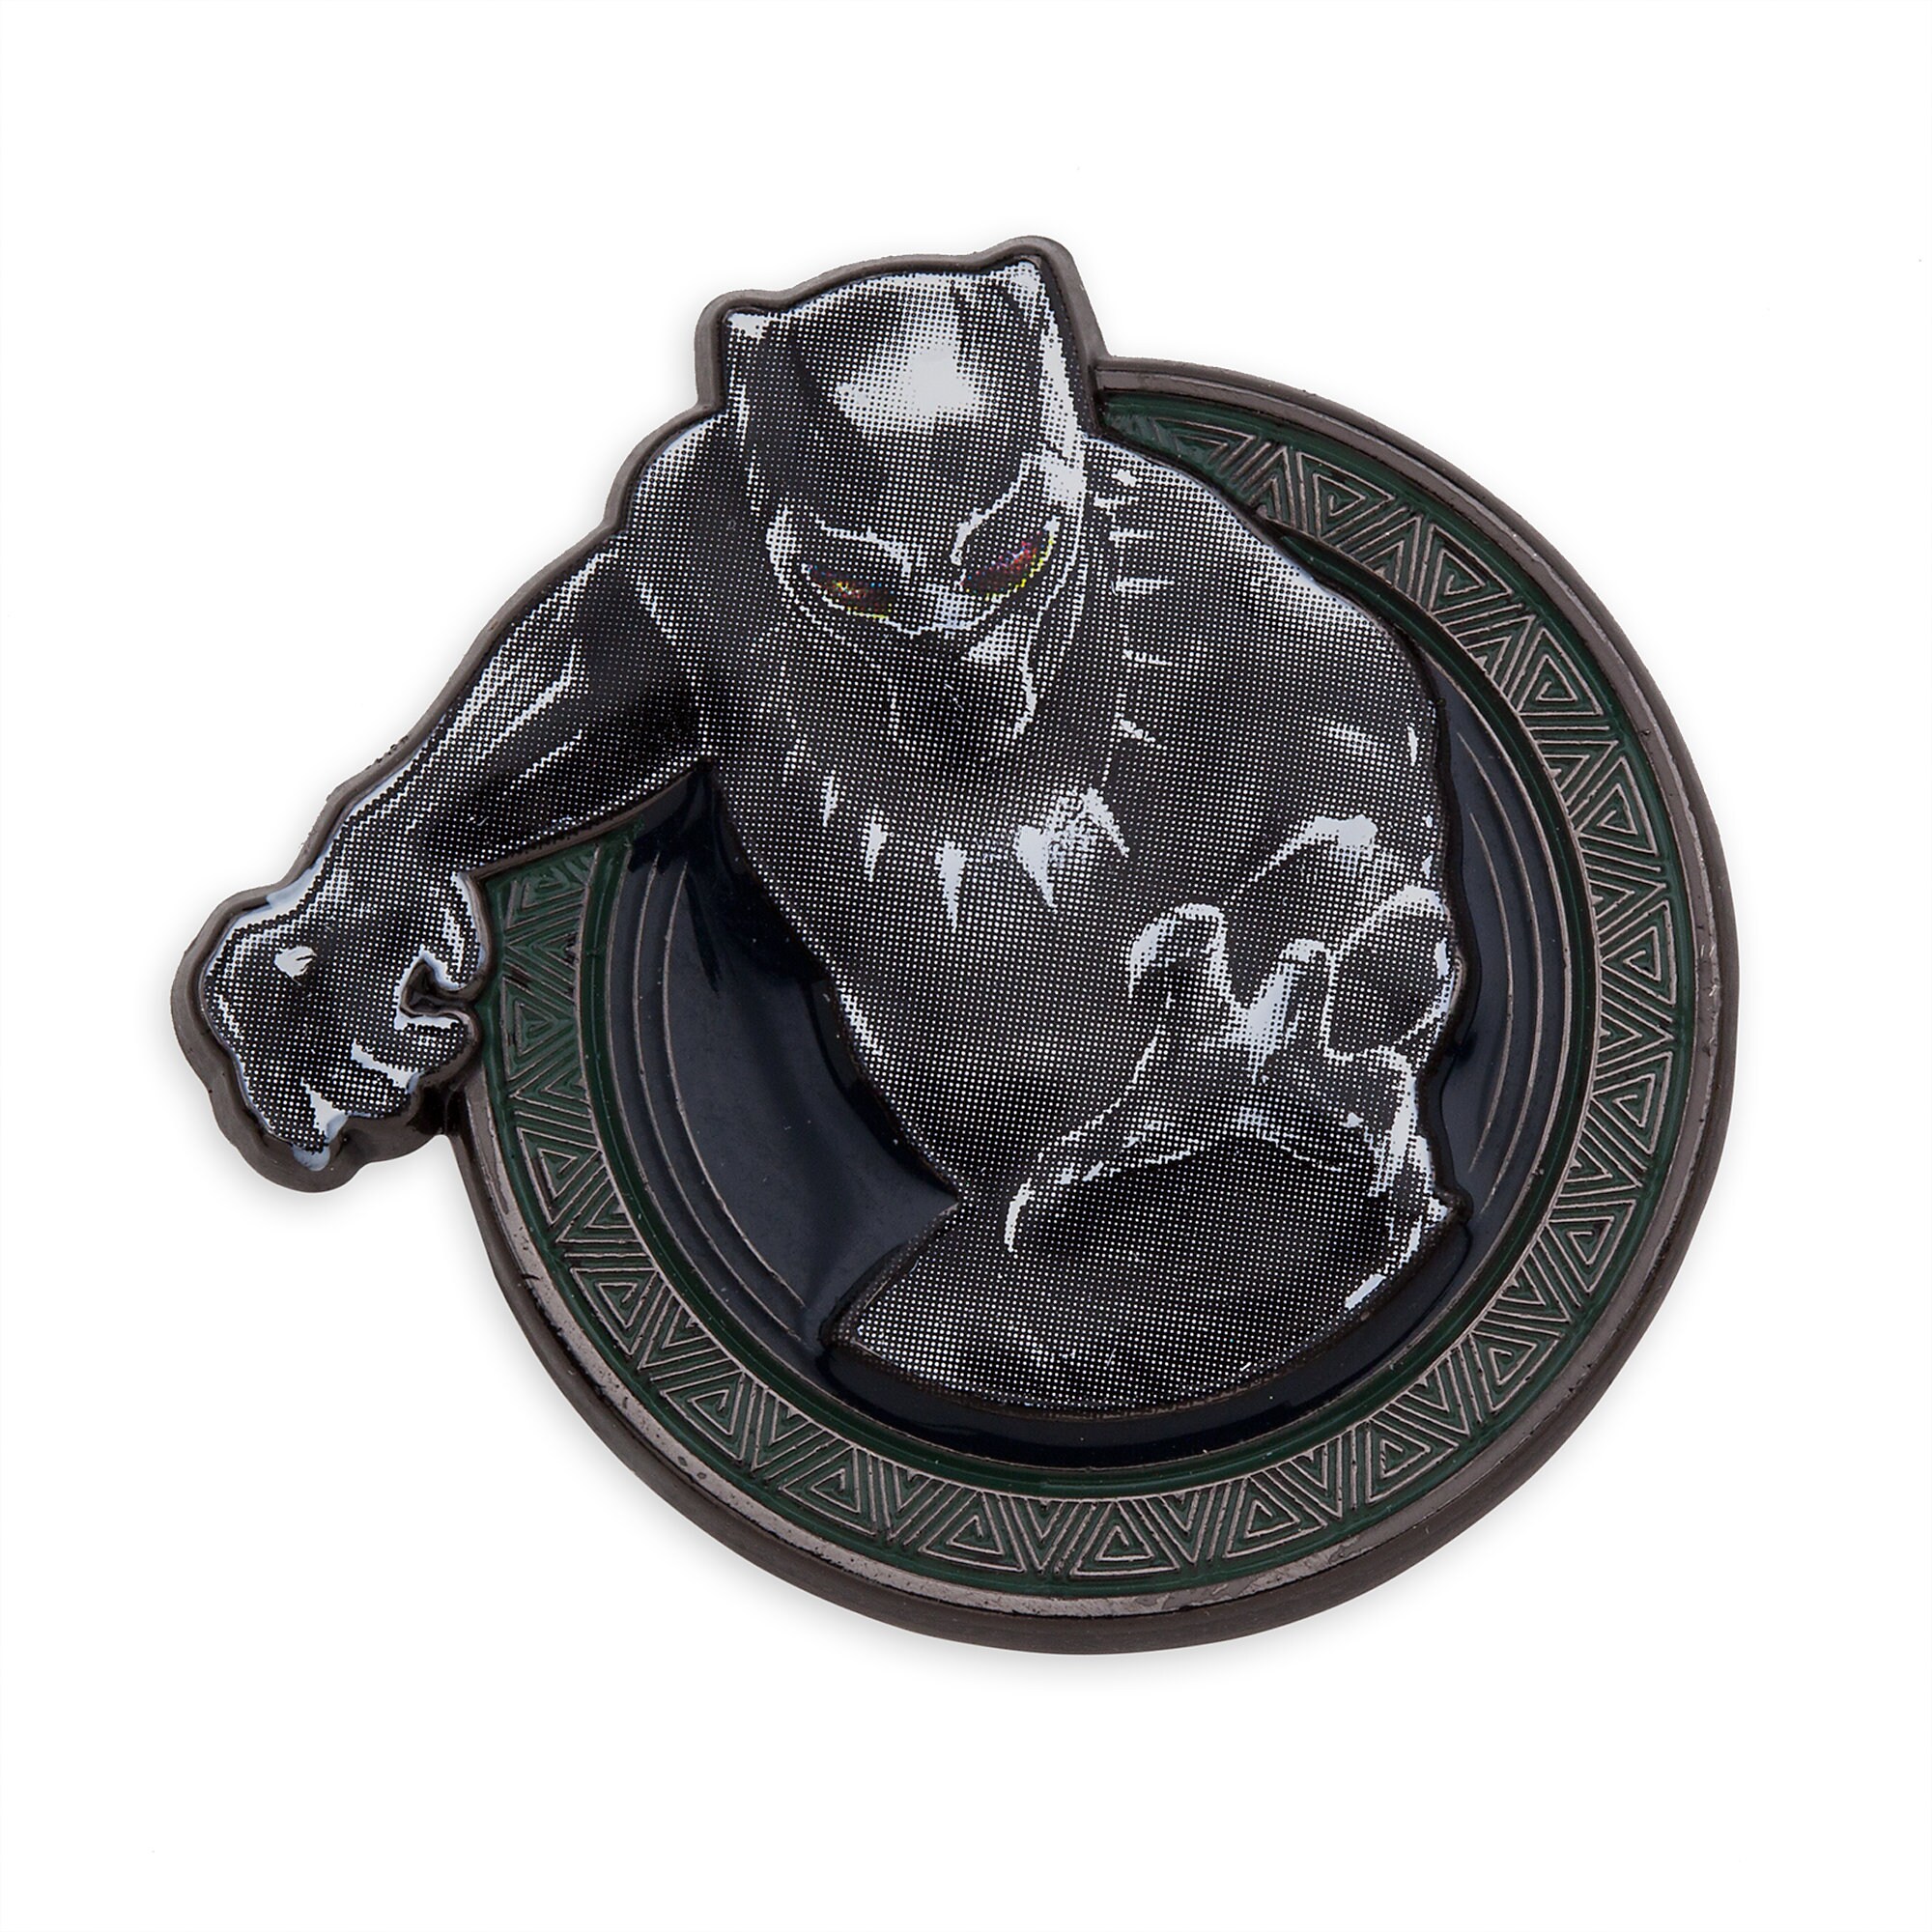 Black Panther Pin